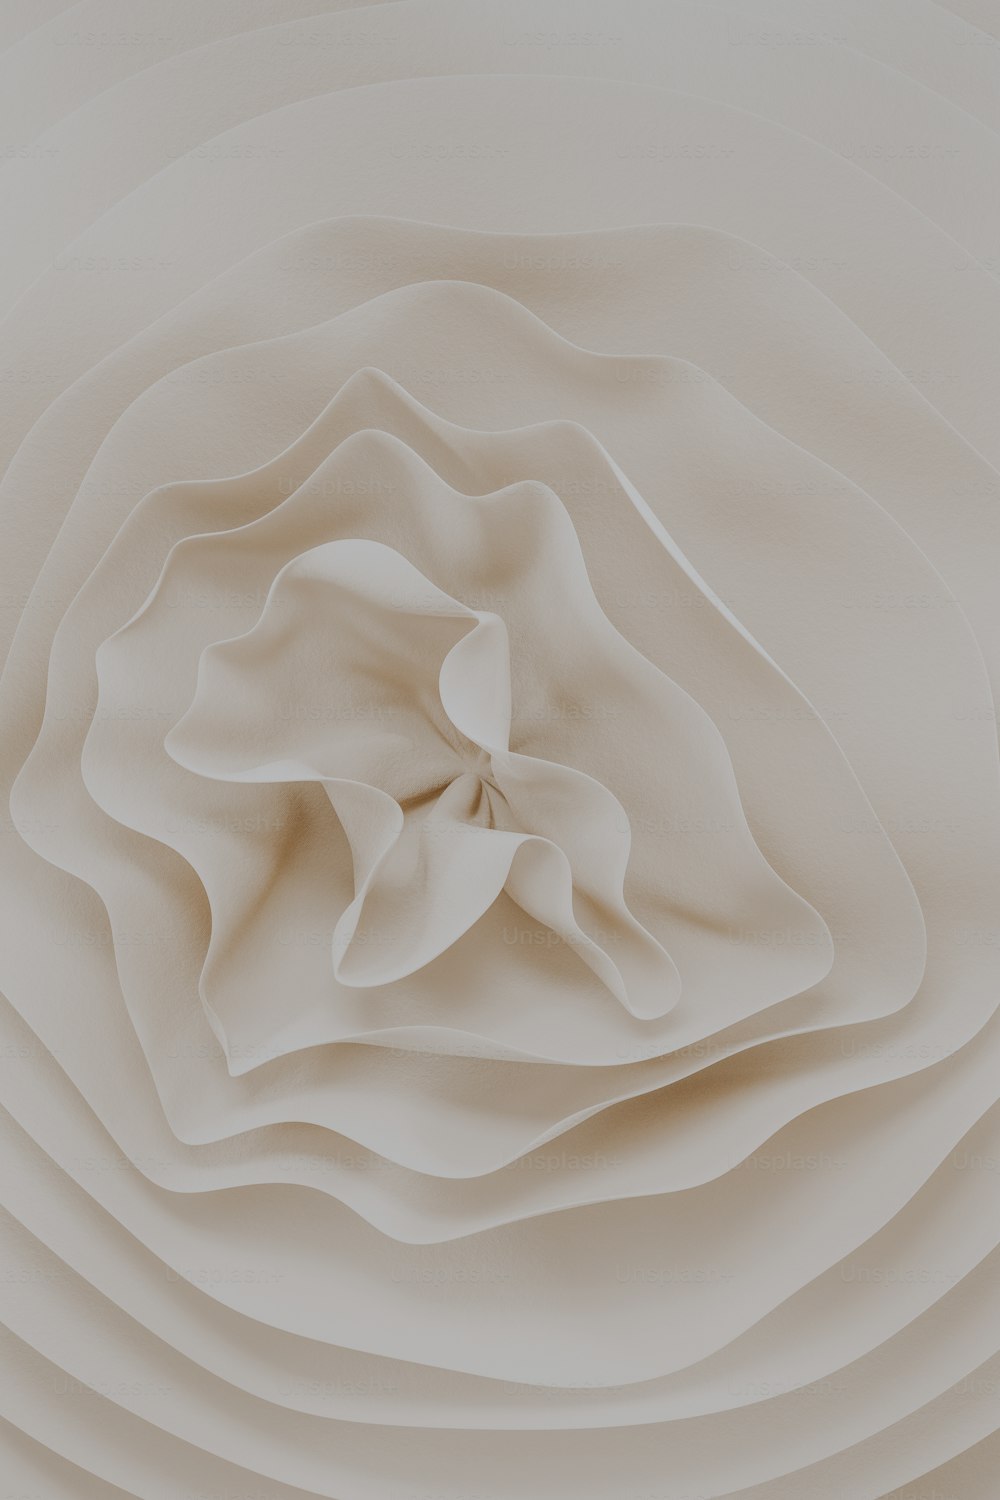 Una foto abstracta de una flor blanca sobre un fondo blanco